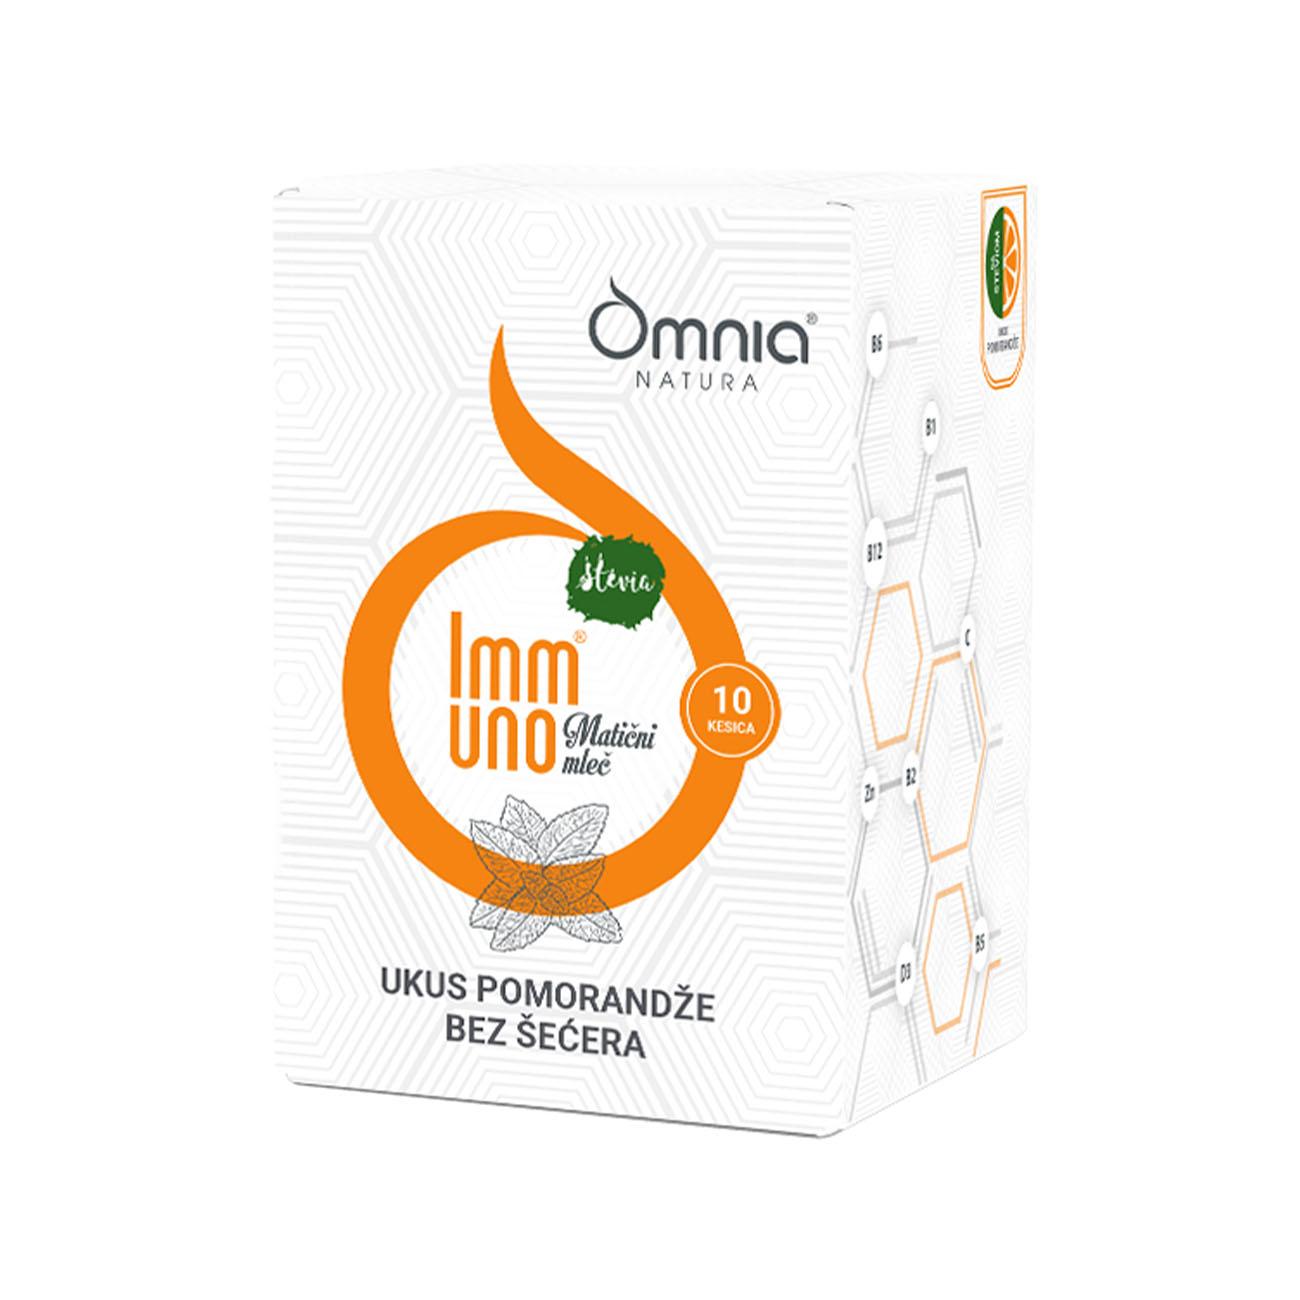 Selected image for OMNIA NATURA Immuno matični mleč stevia pomorandža 10/1